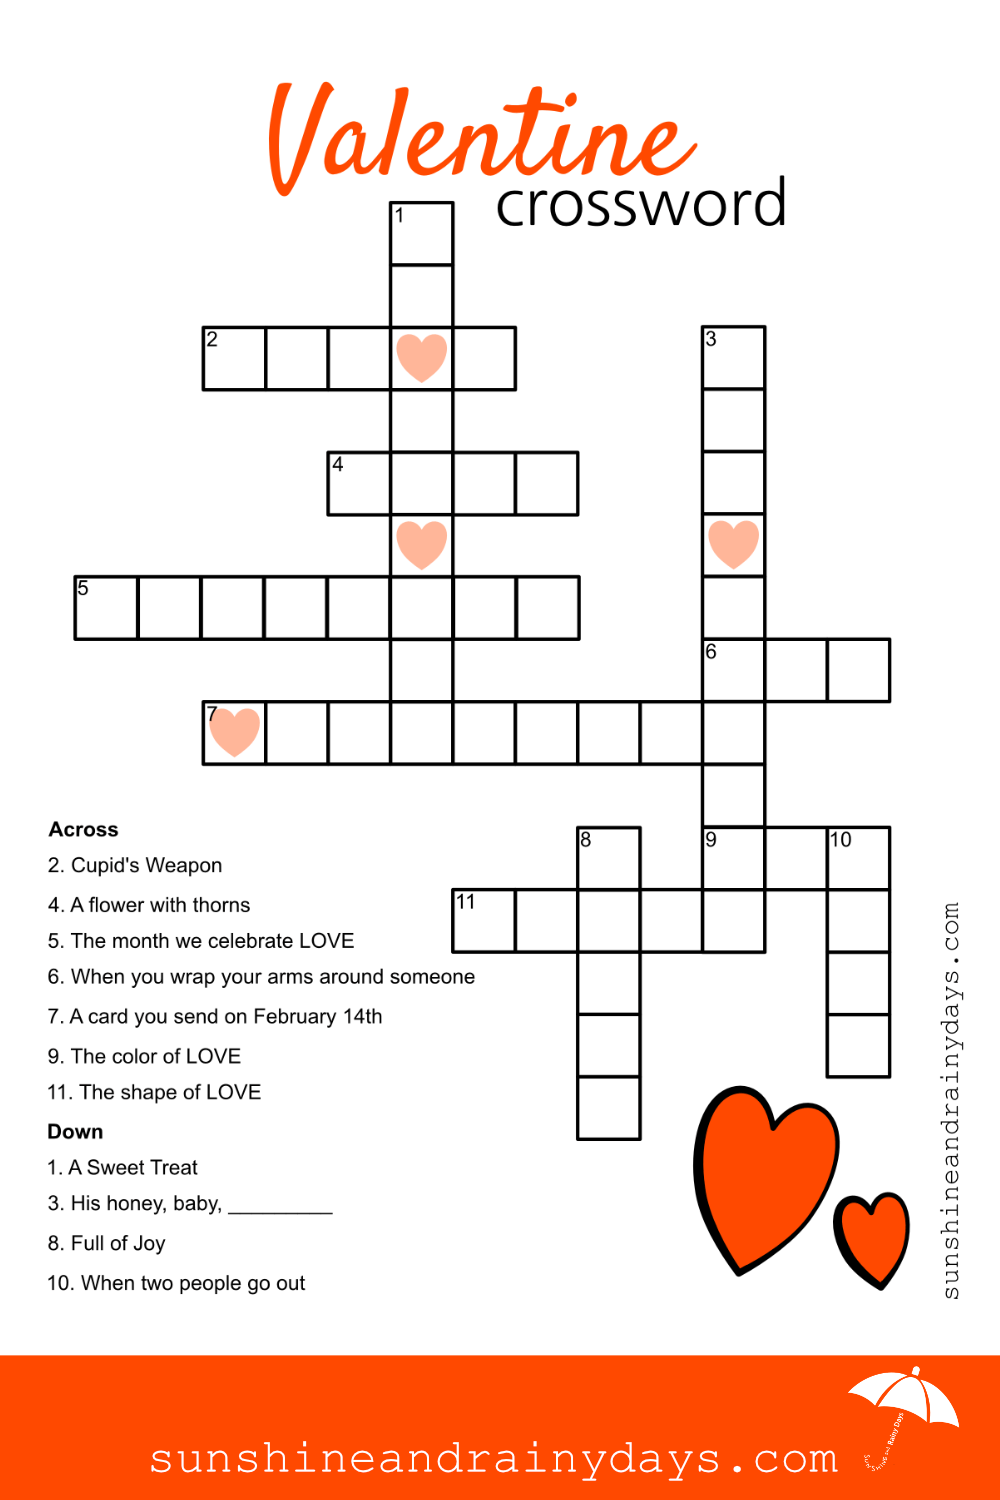 Valentine Crossword Puzzles Printable